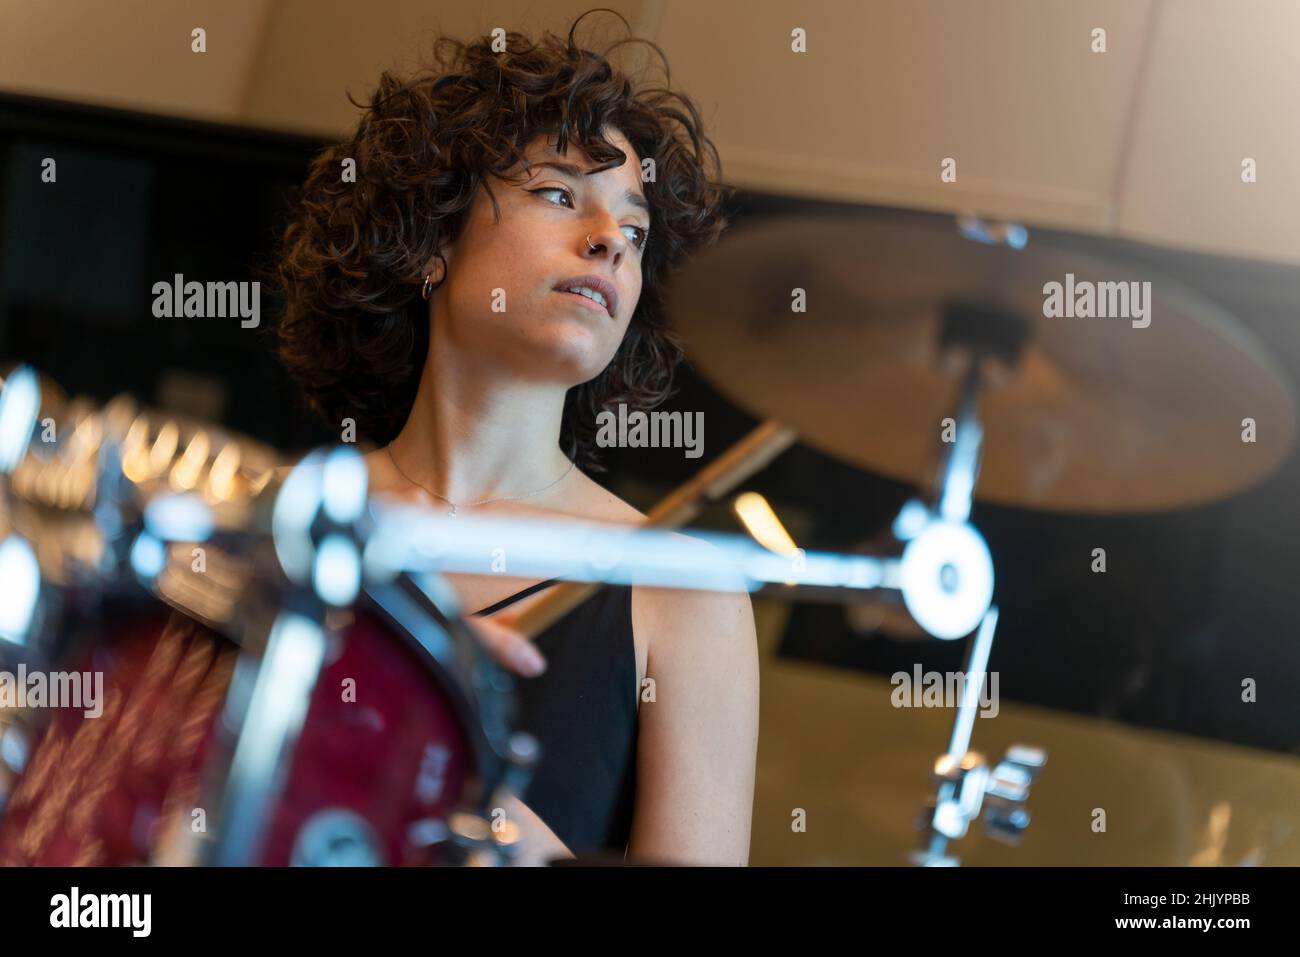 Porträt einer jungen Frau mit lockigen Haaren, die in einem Tonstudio Schlagzeug spielt Stockfoto